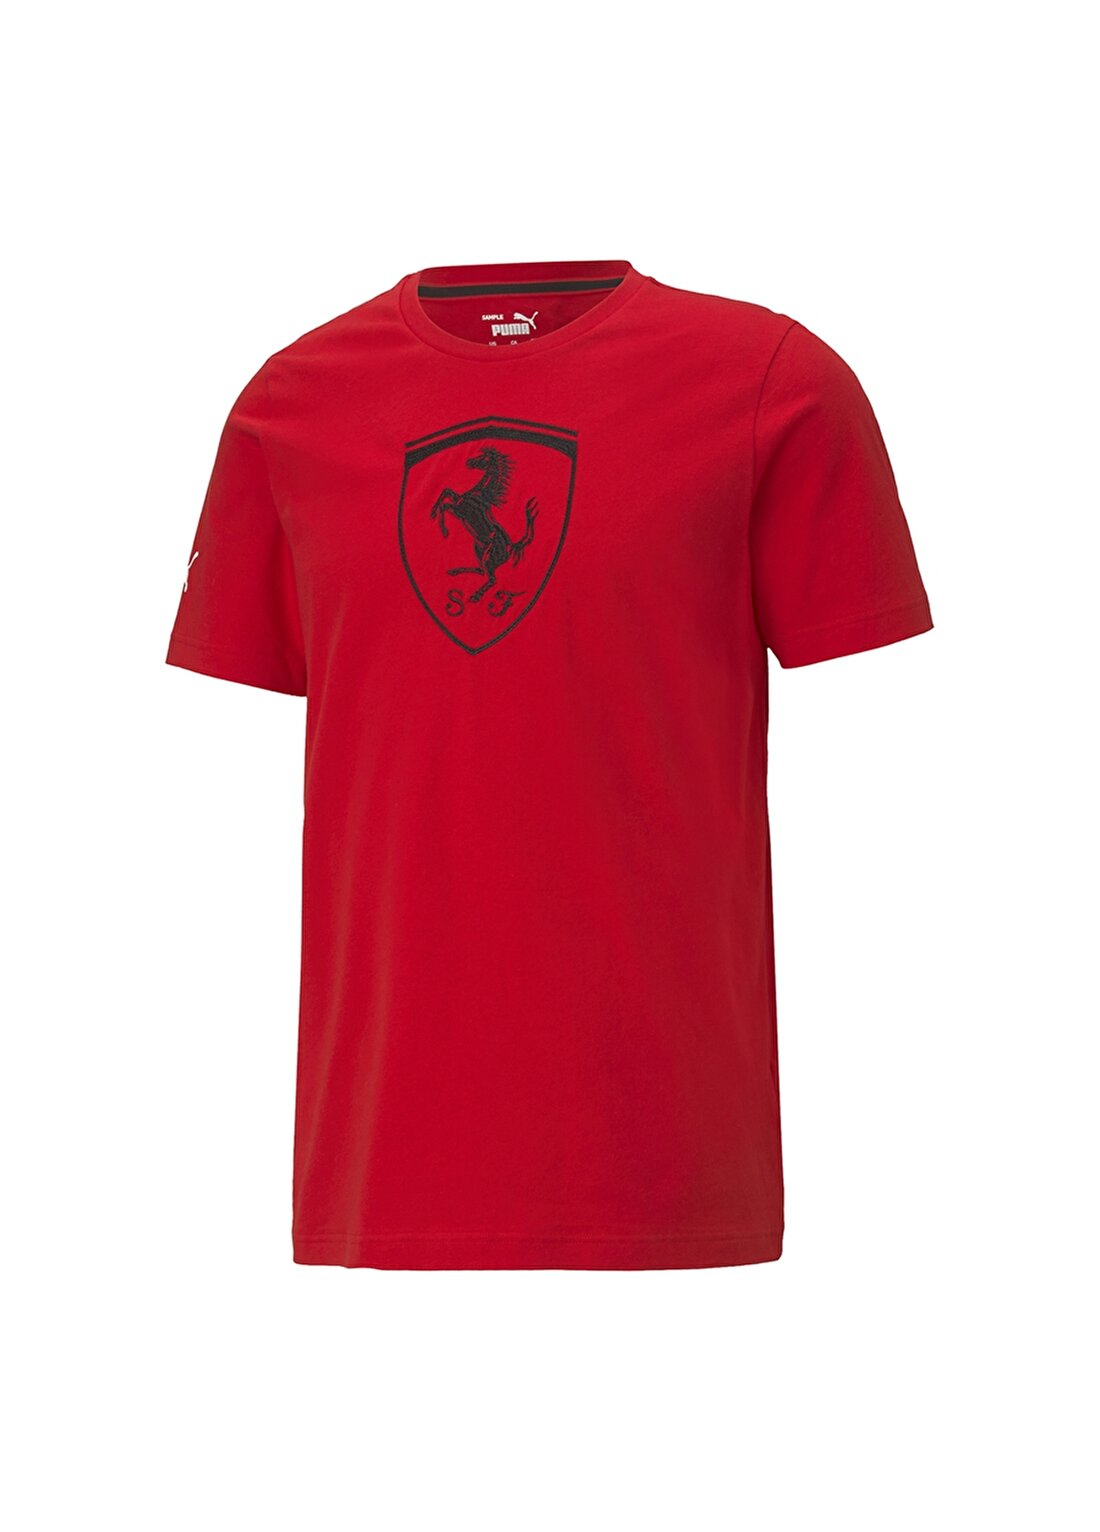 Puma 59984902 Ferrari Race Big Shield Te Bisiklet Yaka Kırmızı Erkek T-Shirt